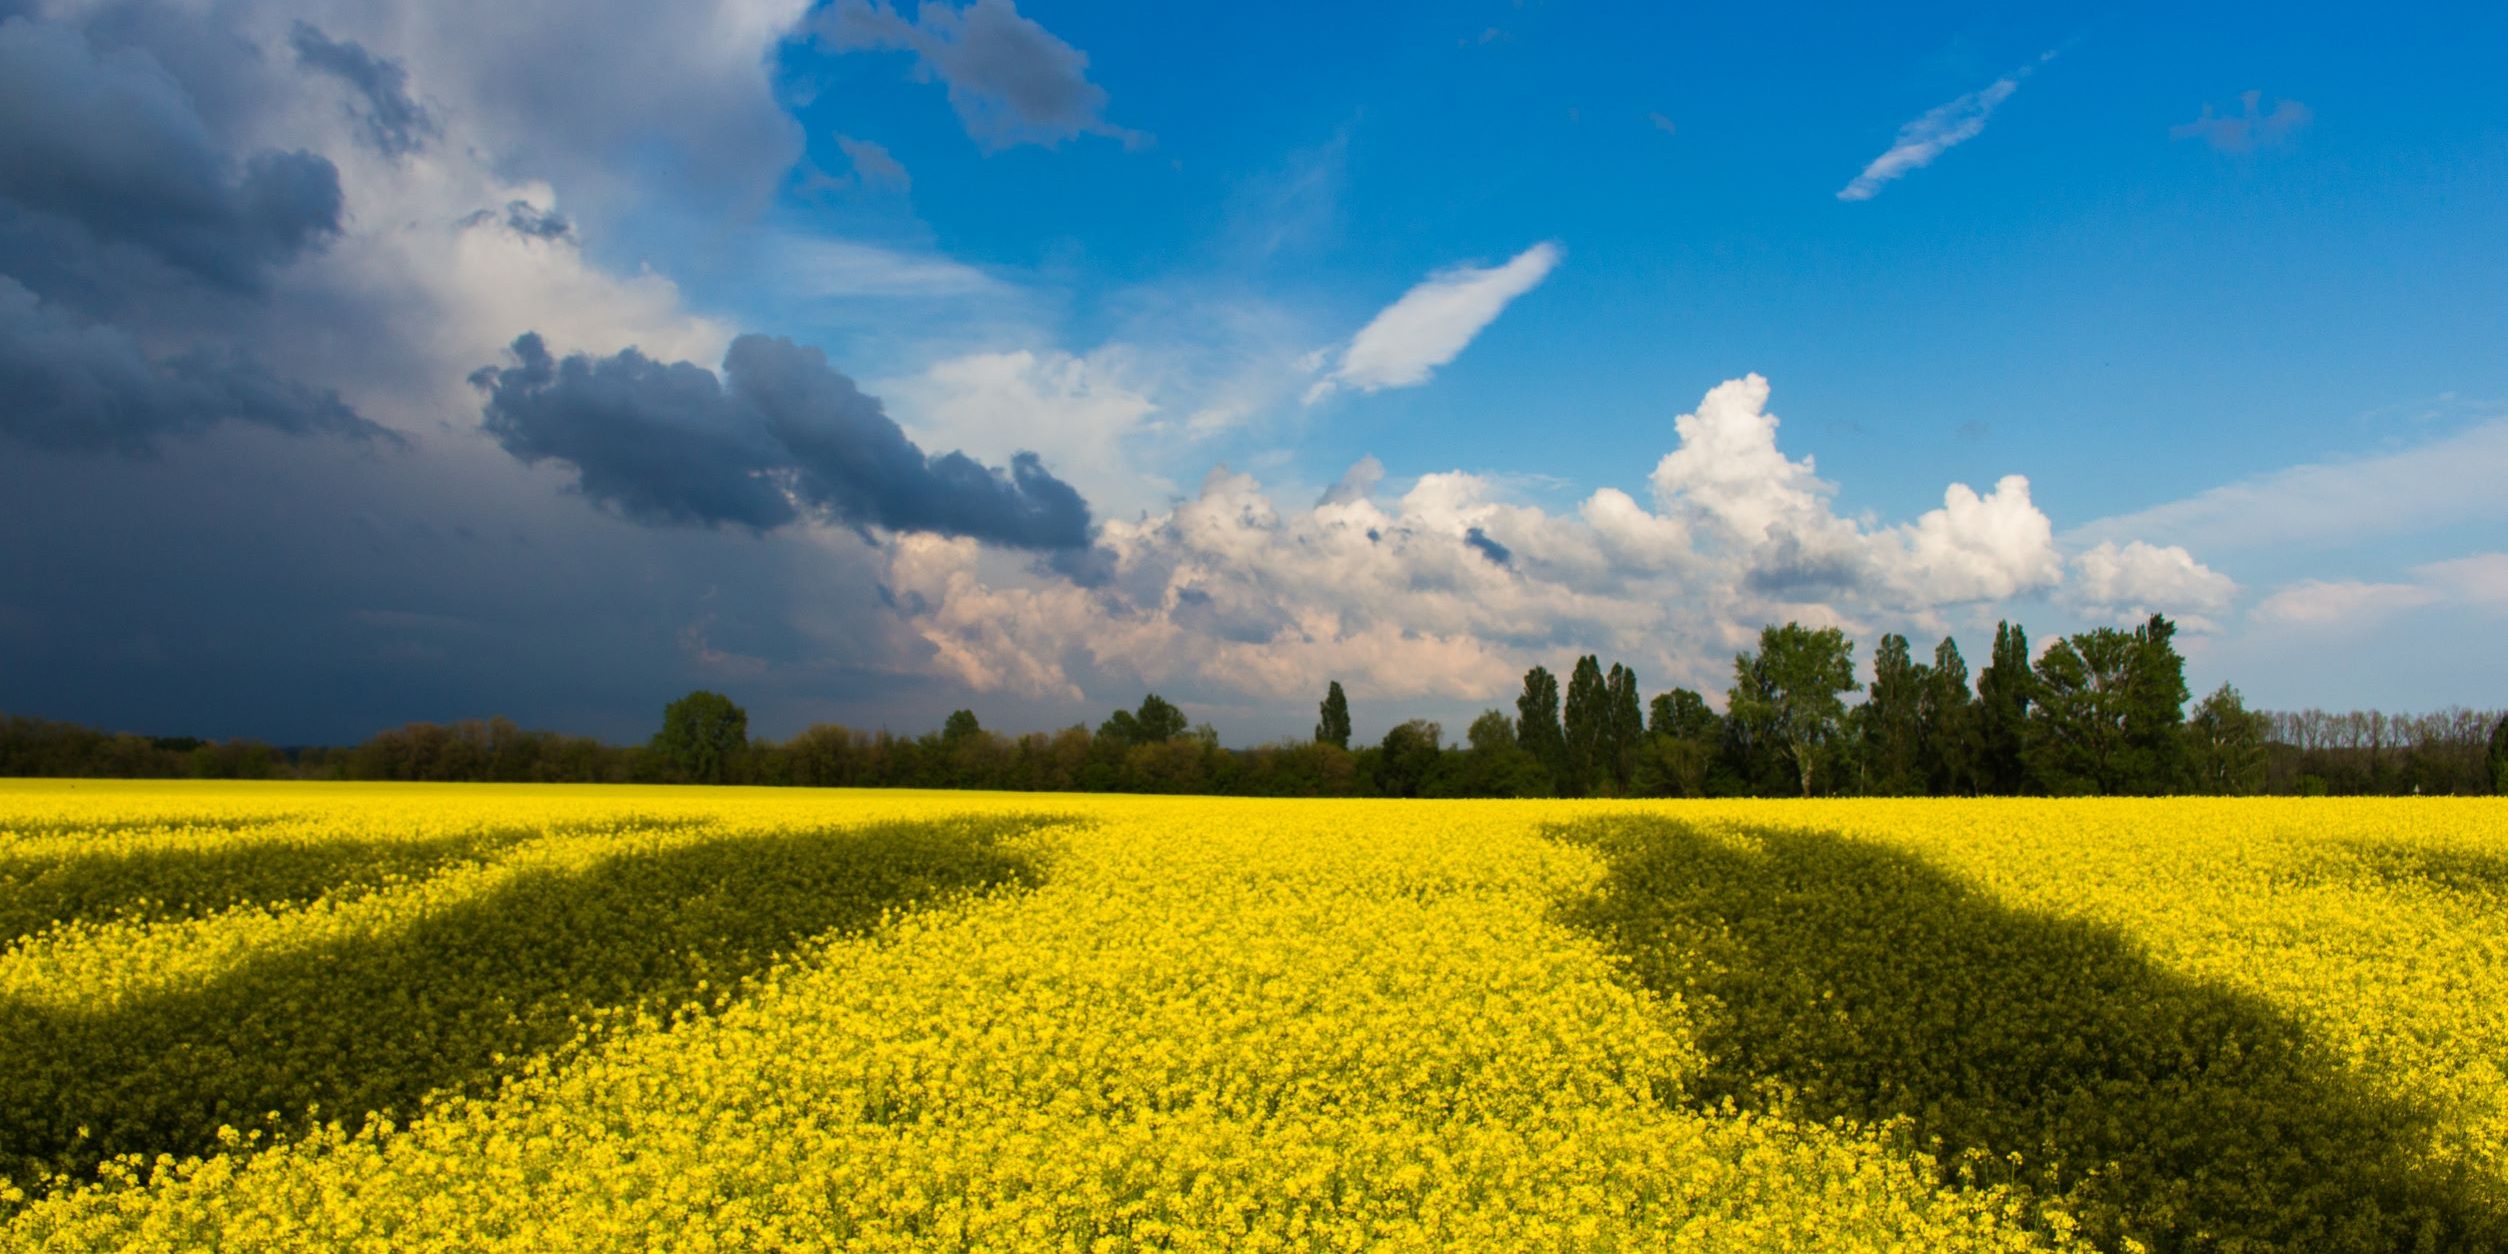 Sininen, osittain pilvinen taivas, joka luo varjoja alleen keltakukkaiselle pellolle. Maiseman värit vastaavat Ukrainan lipun värejä.